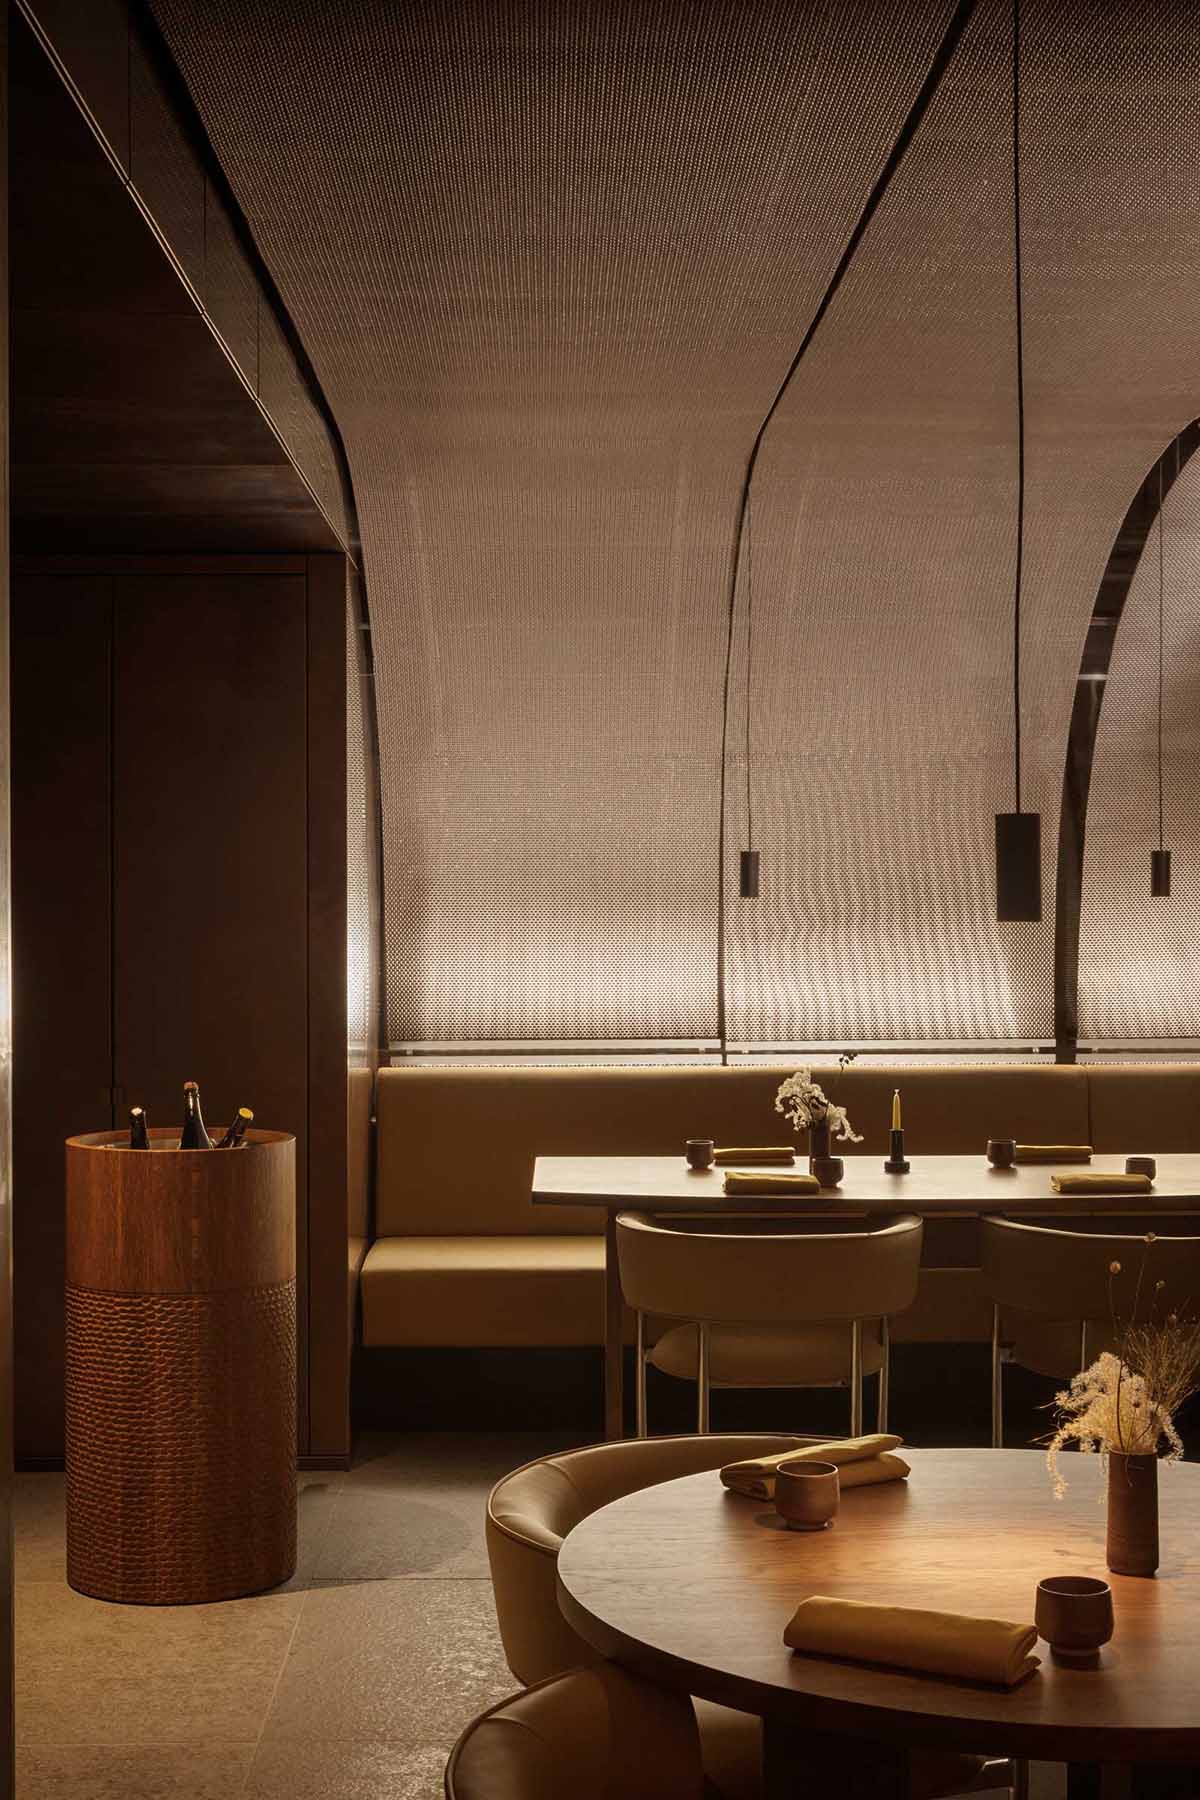 西餐厅设计,STUDIO DAVID THULSTRUP,休闲餐厅设计,伦敦,现代风格餐厅设计案例,IKOYI RESTAURANT,高级西餐厅